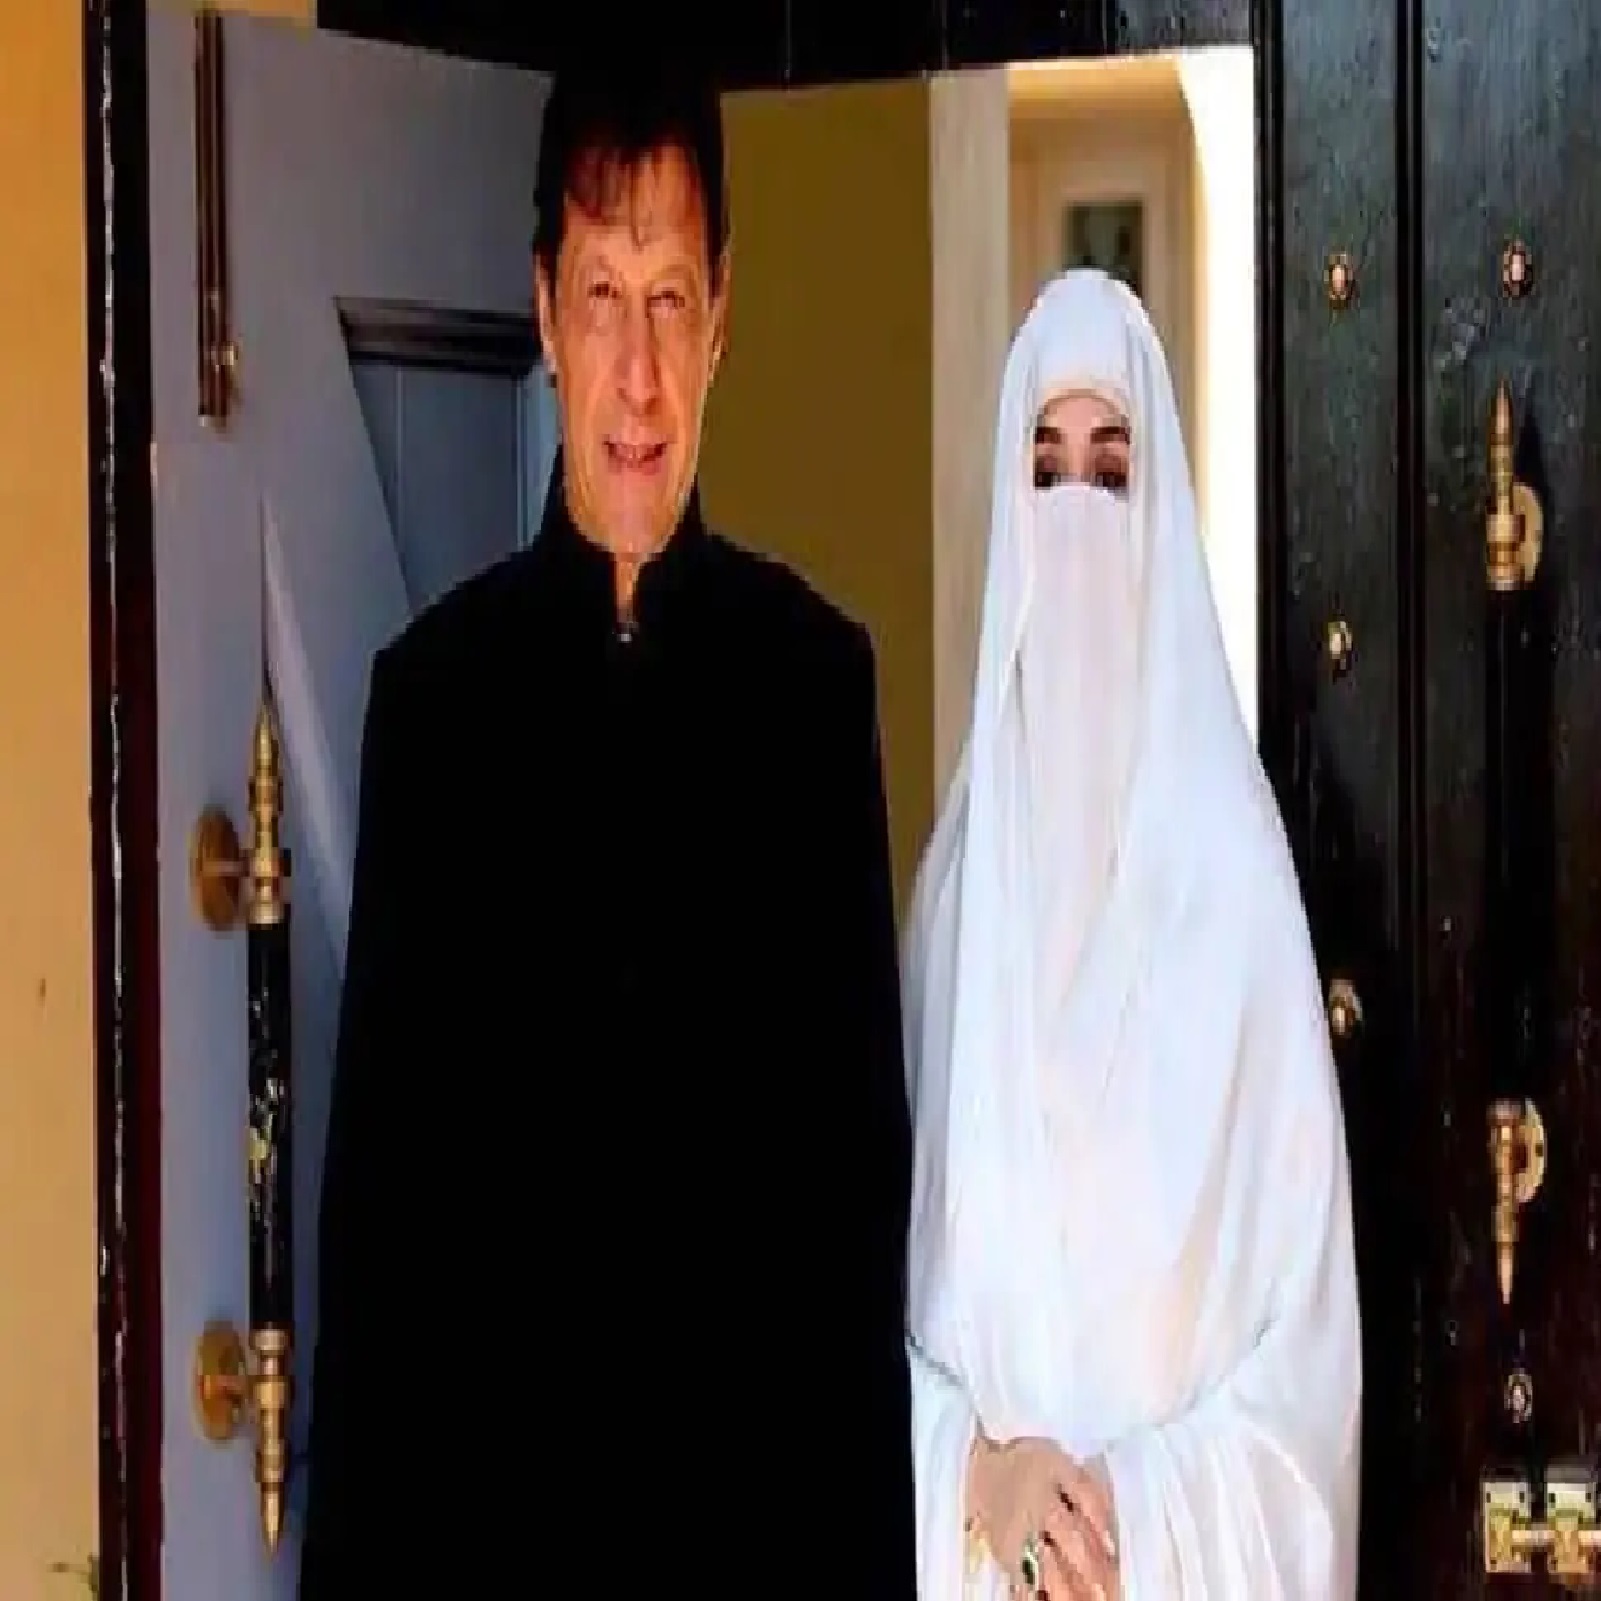 Pakistan pm imran khan third marriage with bushra bibi deteriorating - इमरान  खान की तीसरी शादी भी टूटने की कगार पर, बुशरा बीवी ने छोड़ा घर – News18 हिंदी